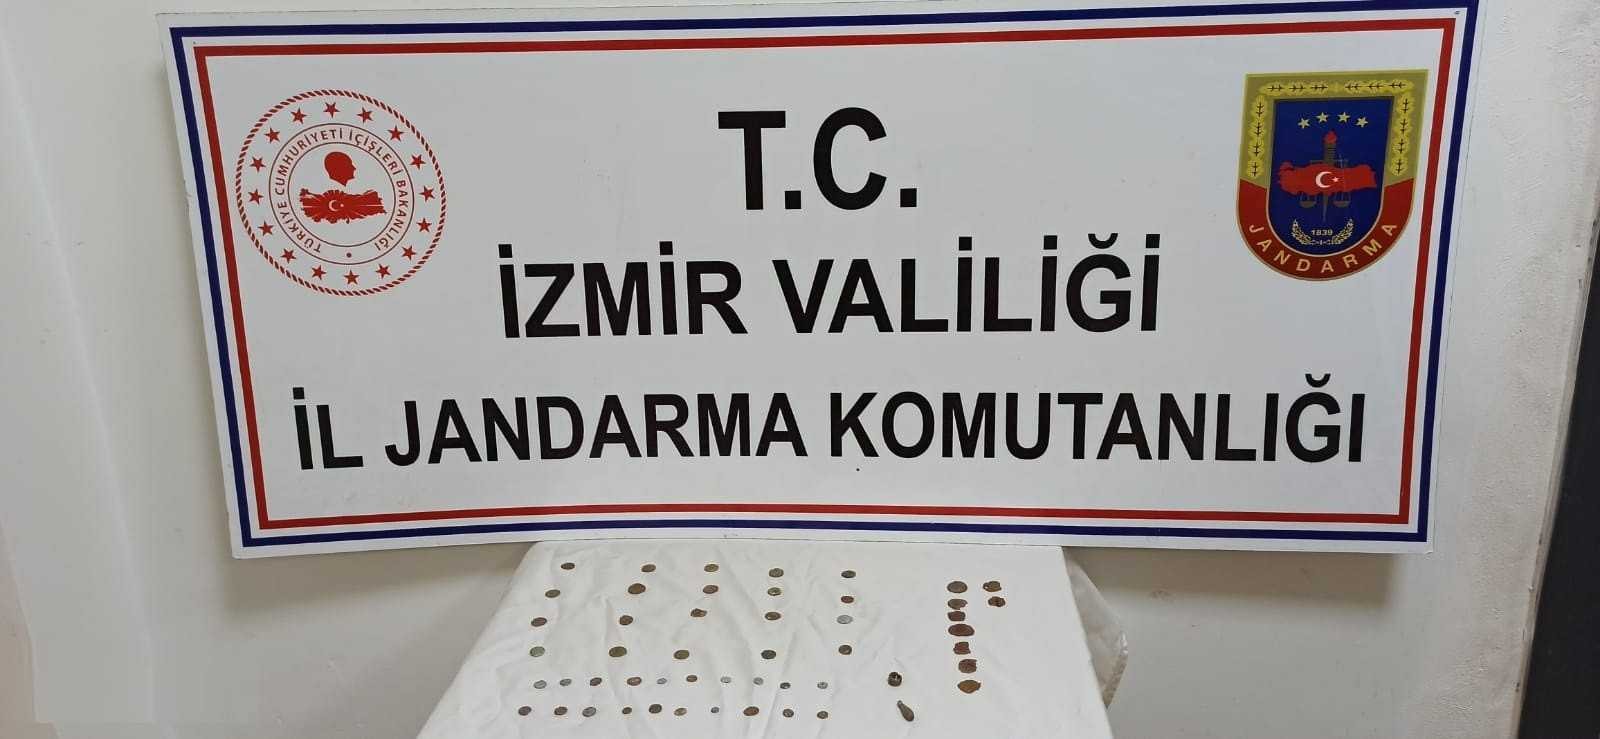 İzmir’de jandarma 51 adet tarihi eser ele geçirdi #izmir